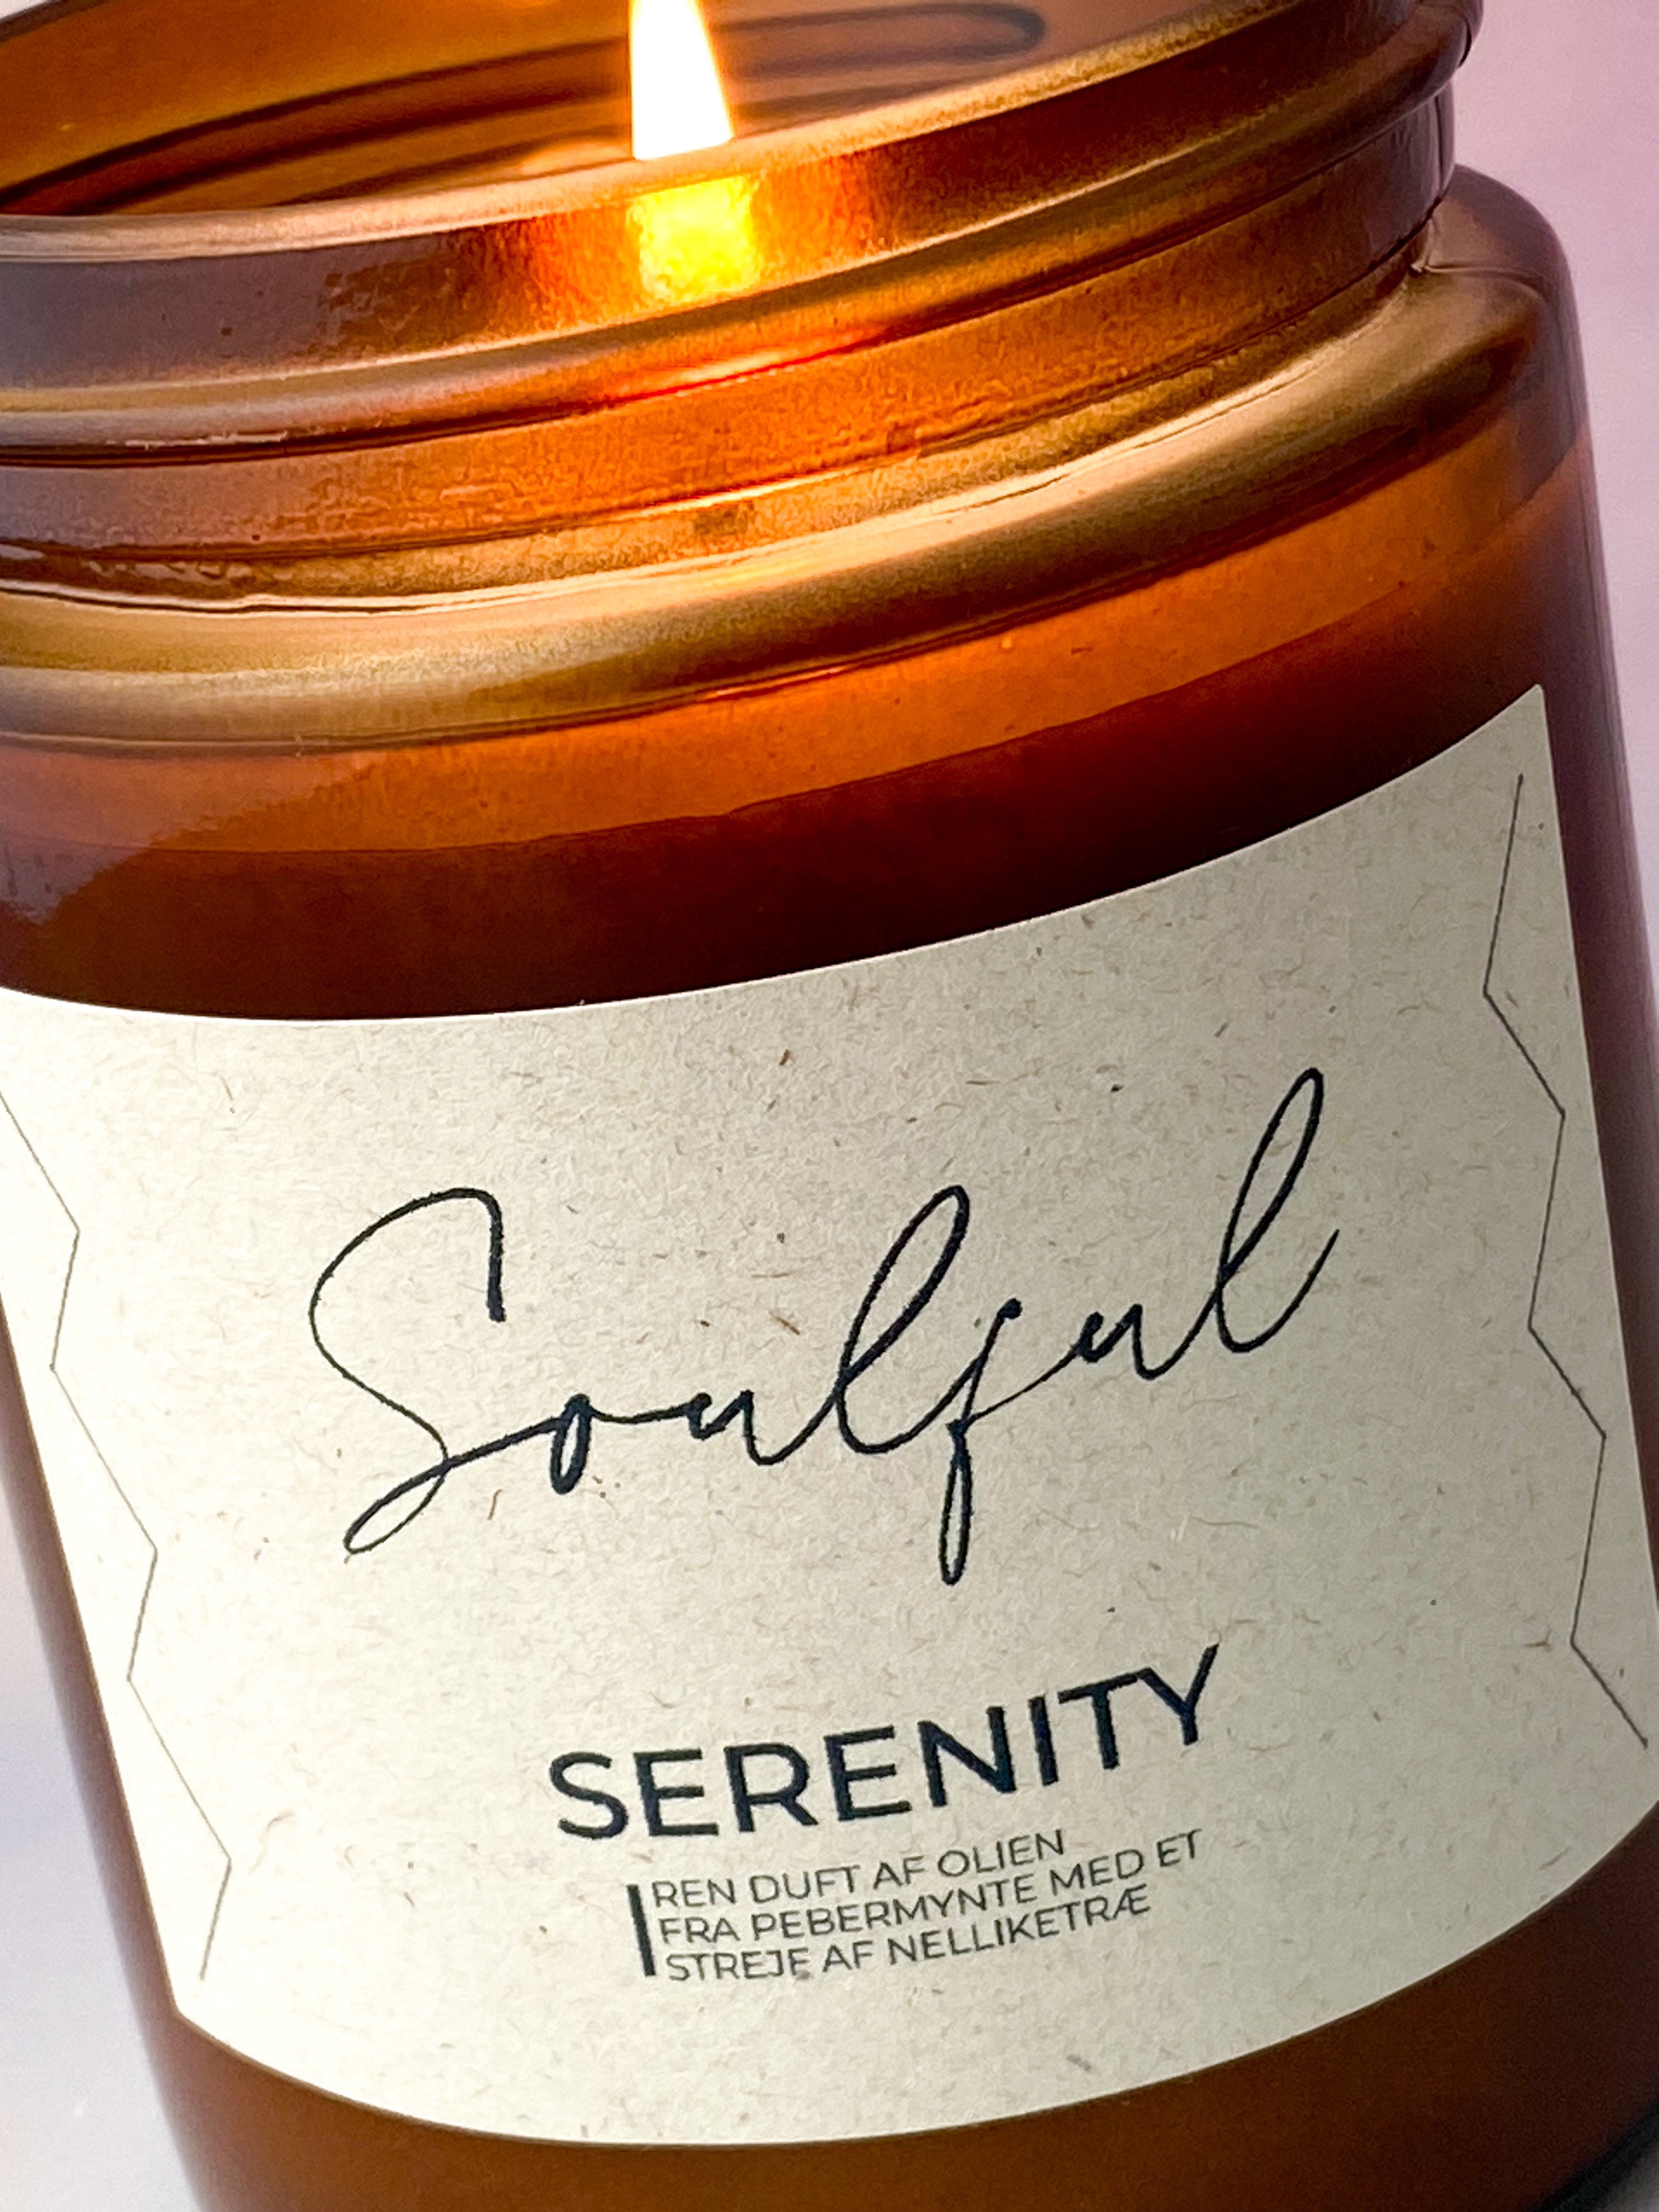 Aromaterapilys af Soya “Serenity”